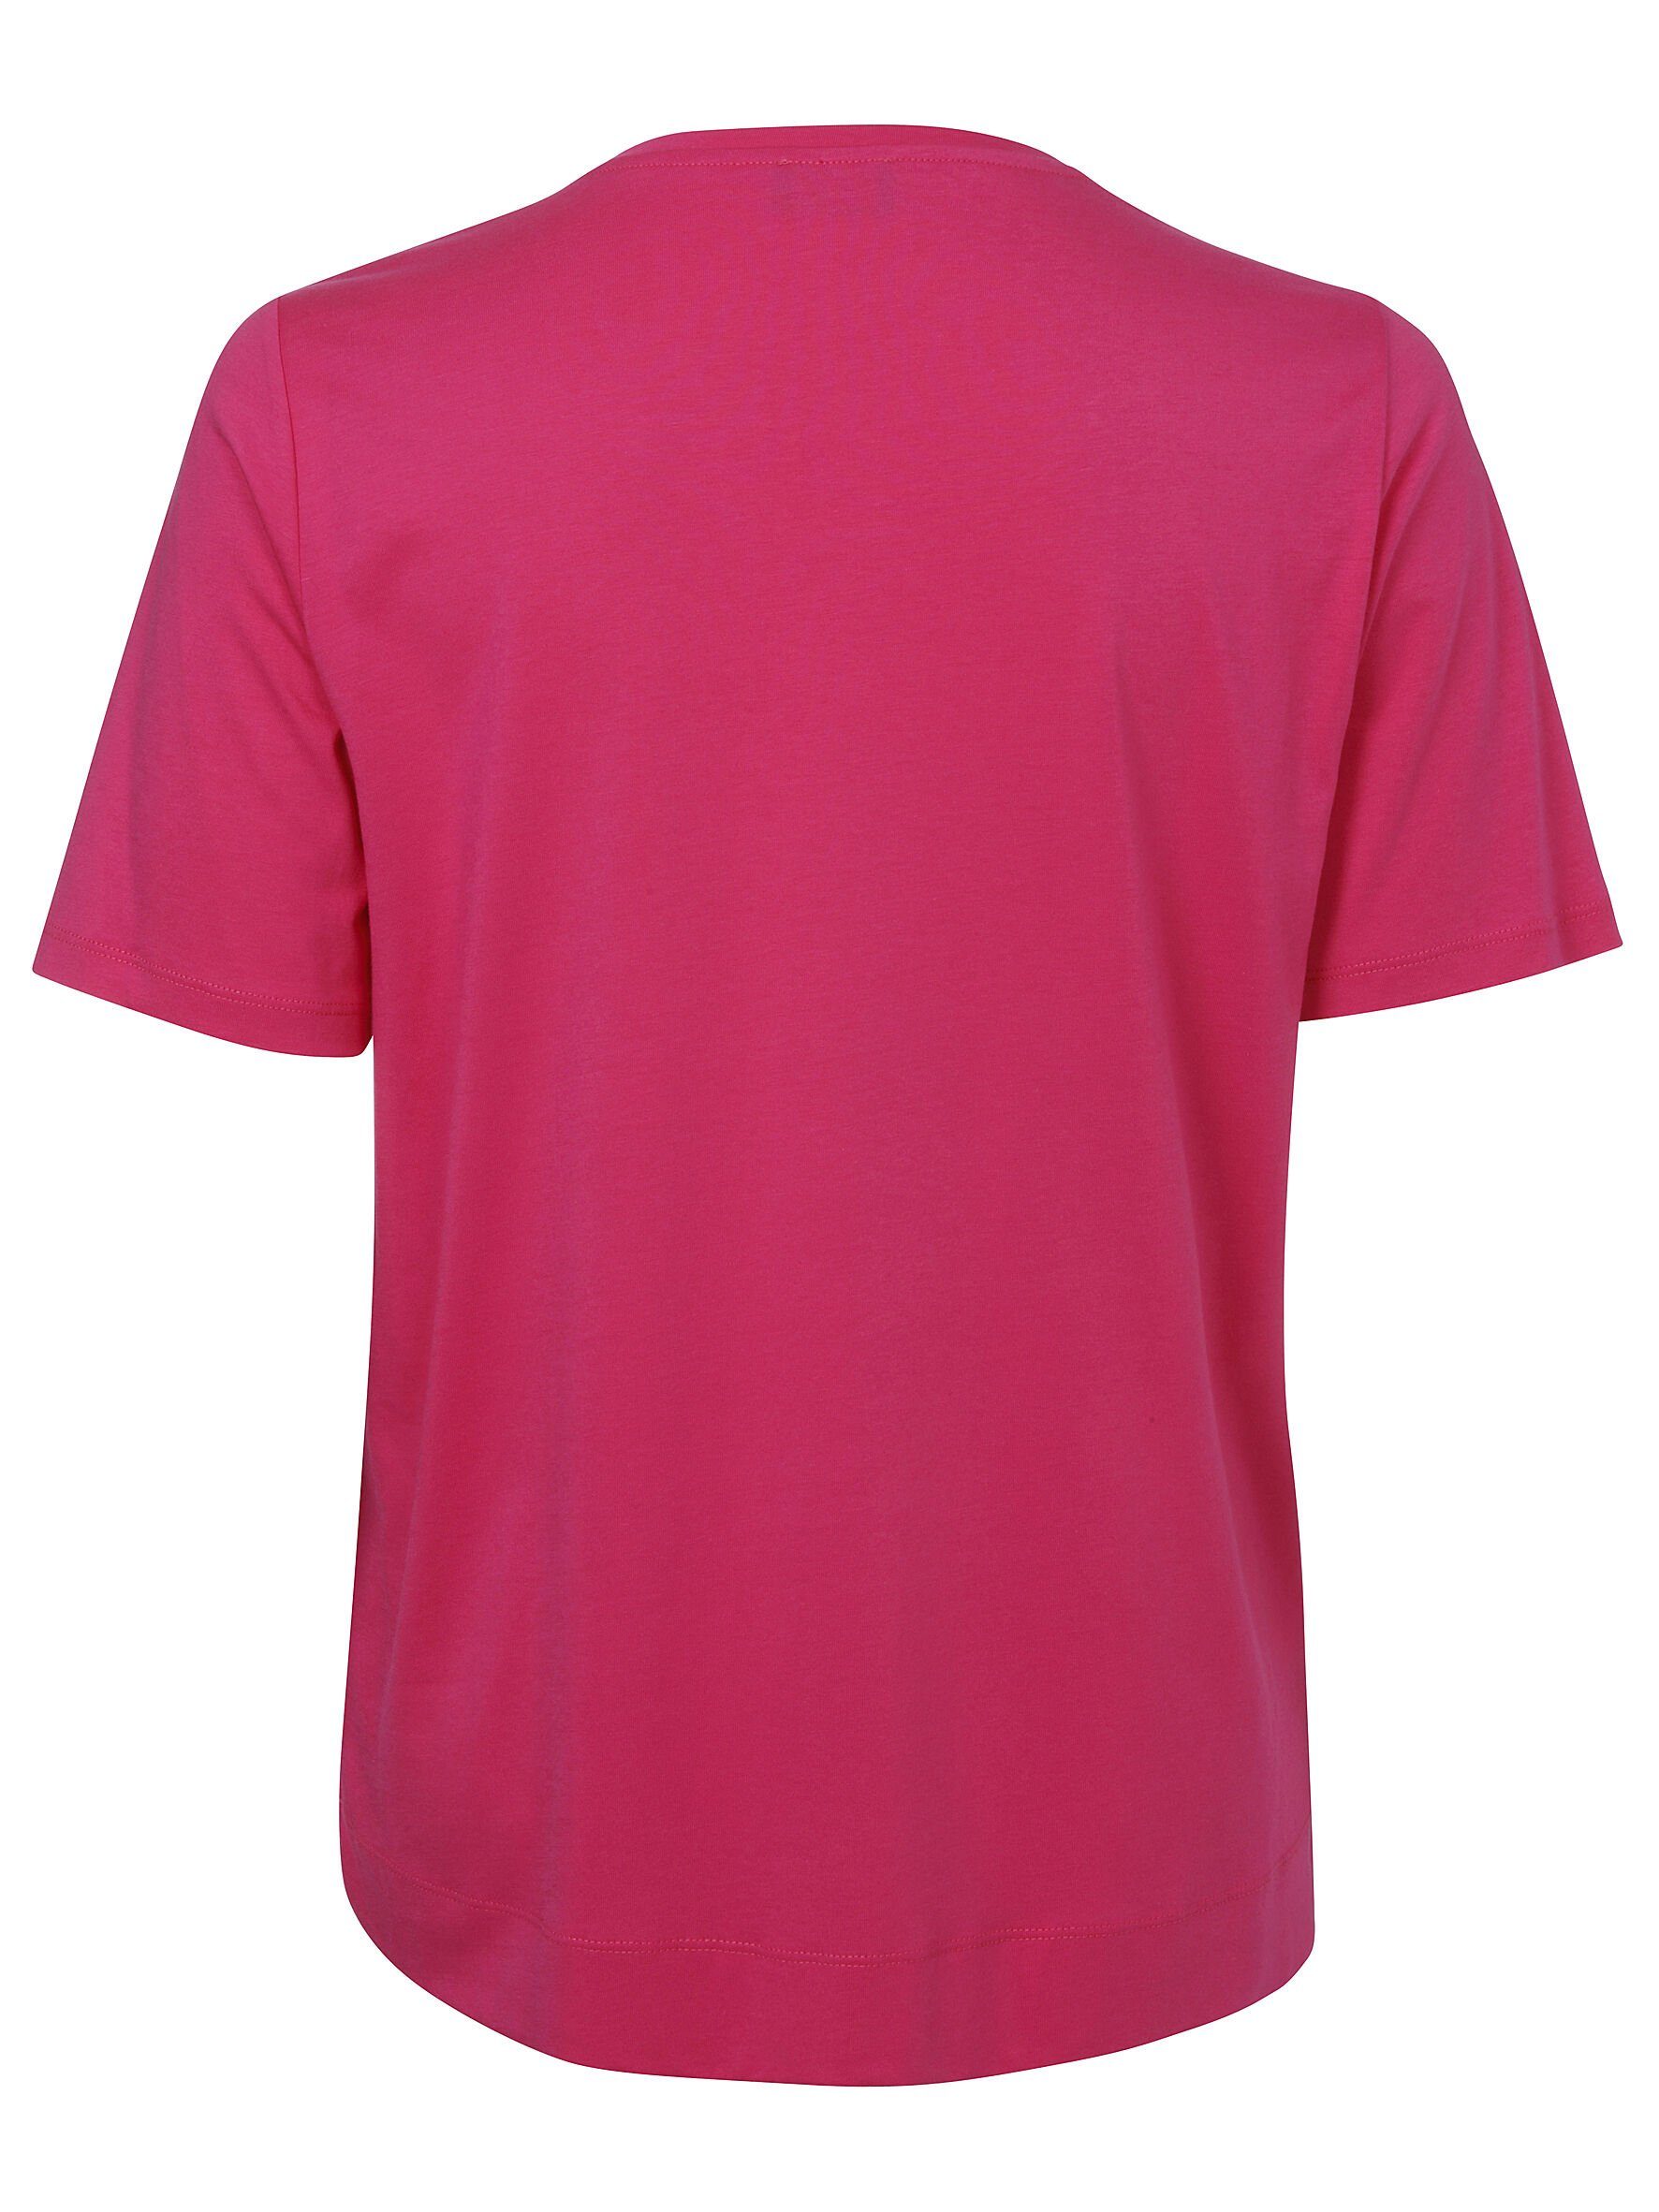 VIA multicolor mit Rundhalsshirt DUE Rundhalsausschnitt pink APPIA